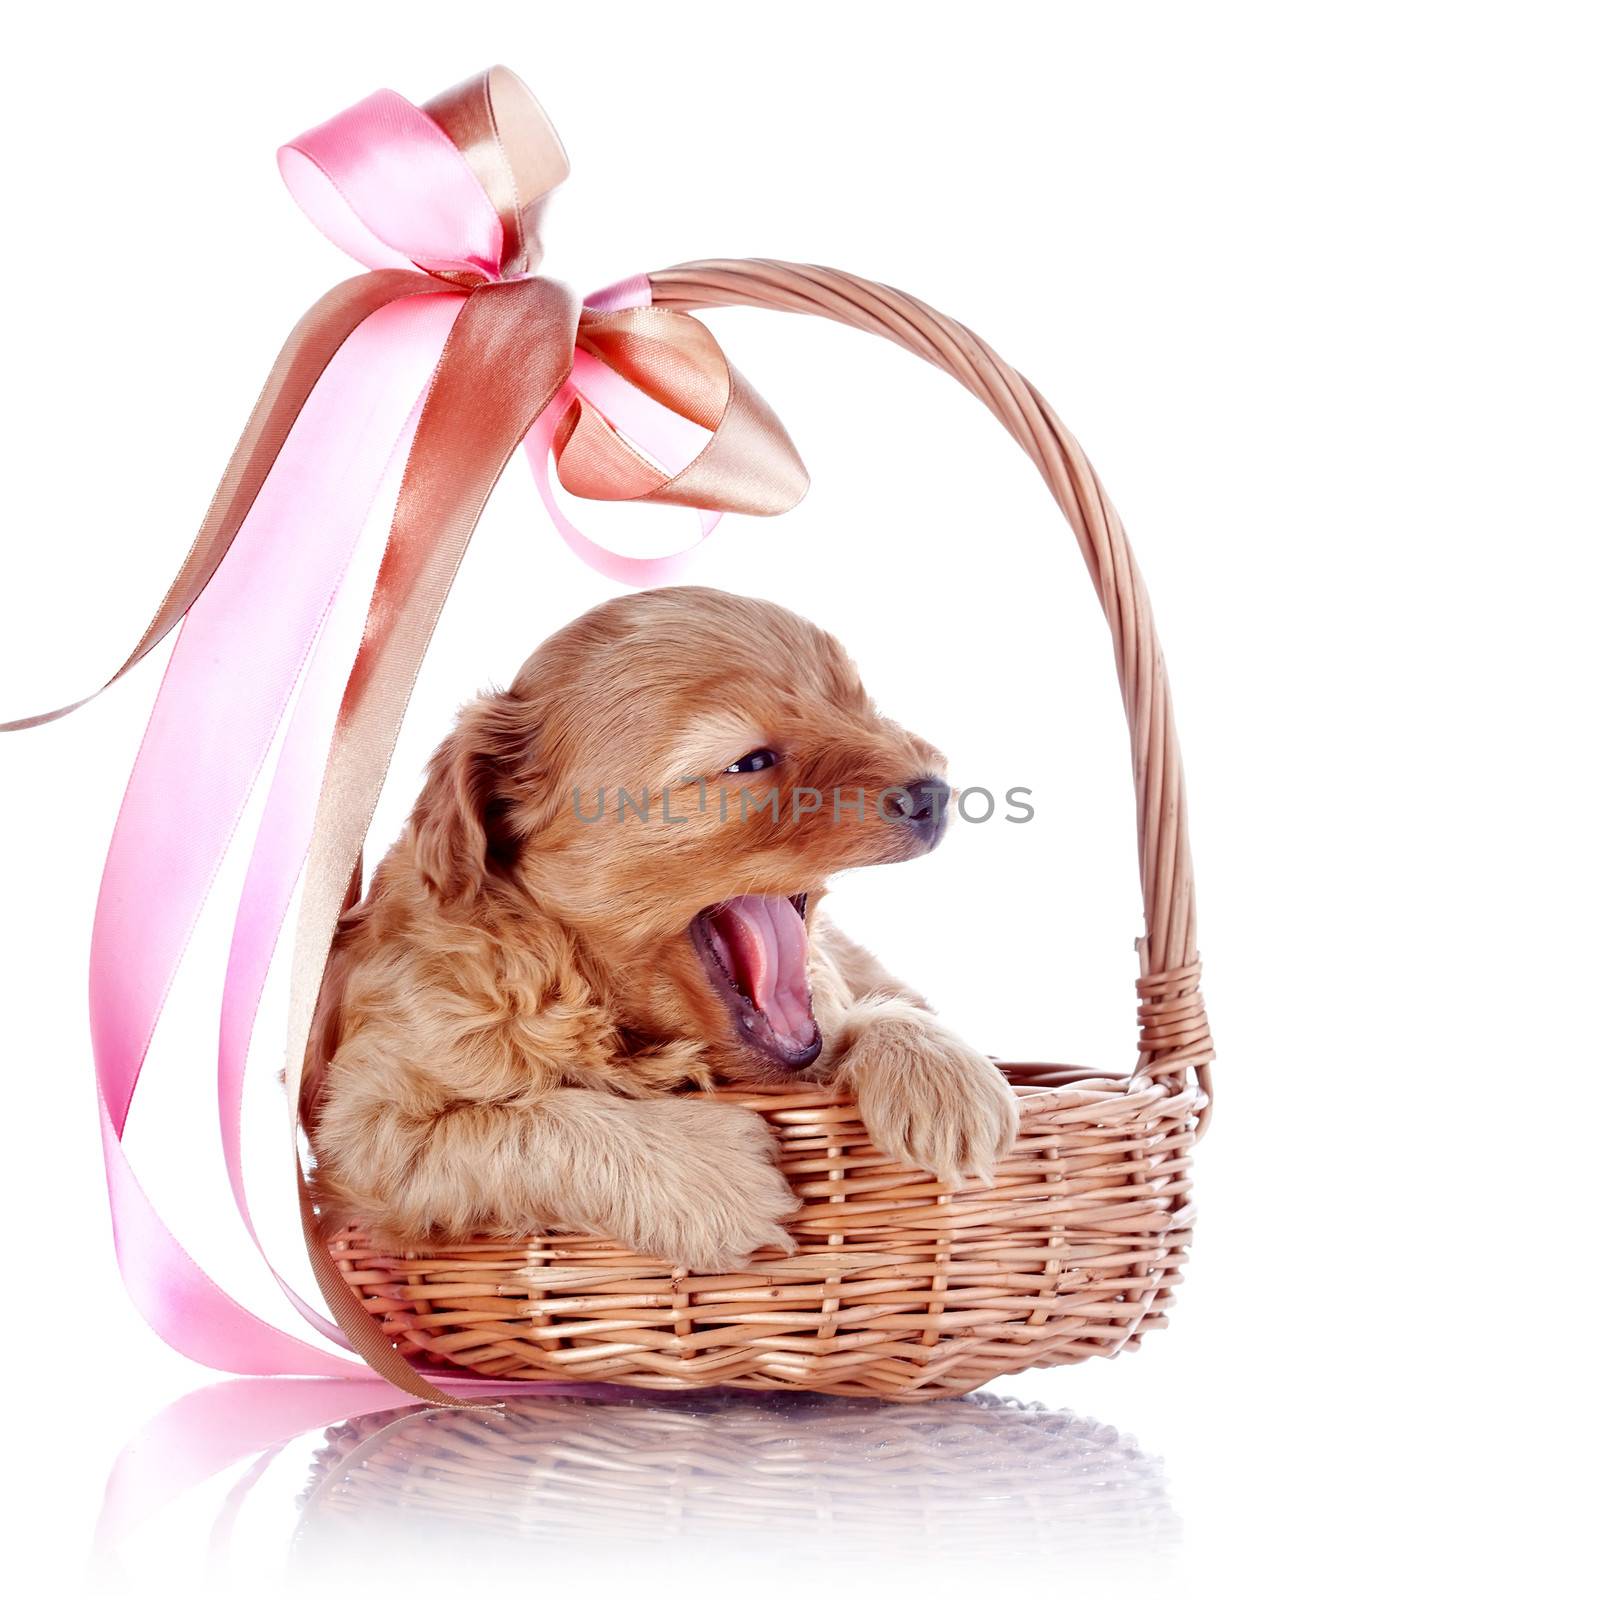 Yawning puppy in a basket with a bow. by Azaliya